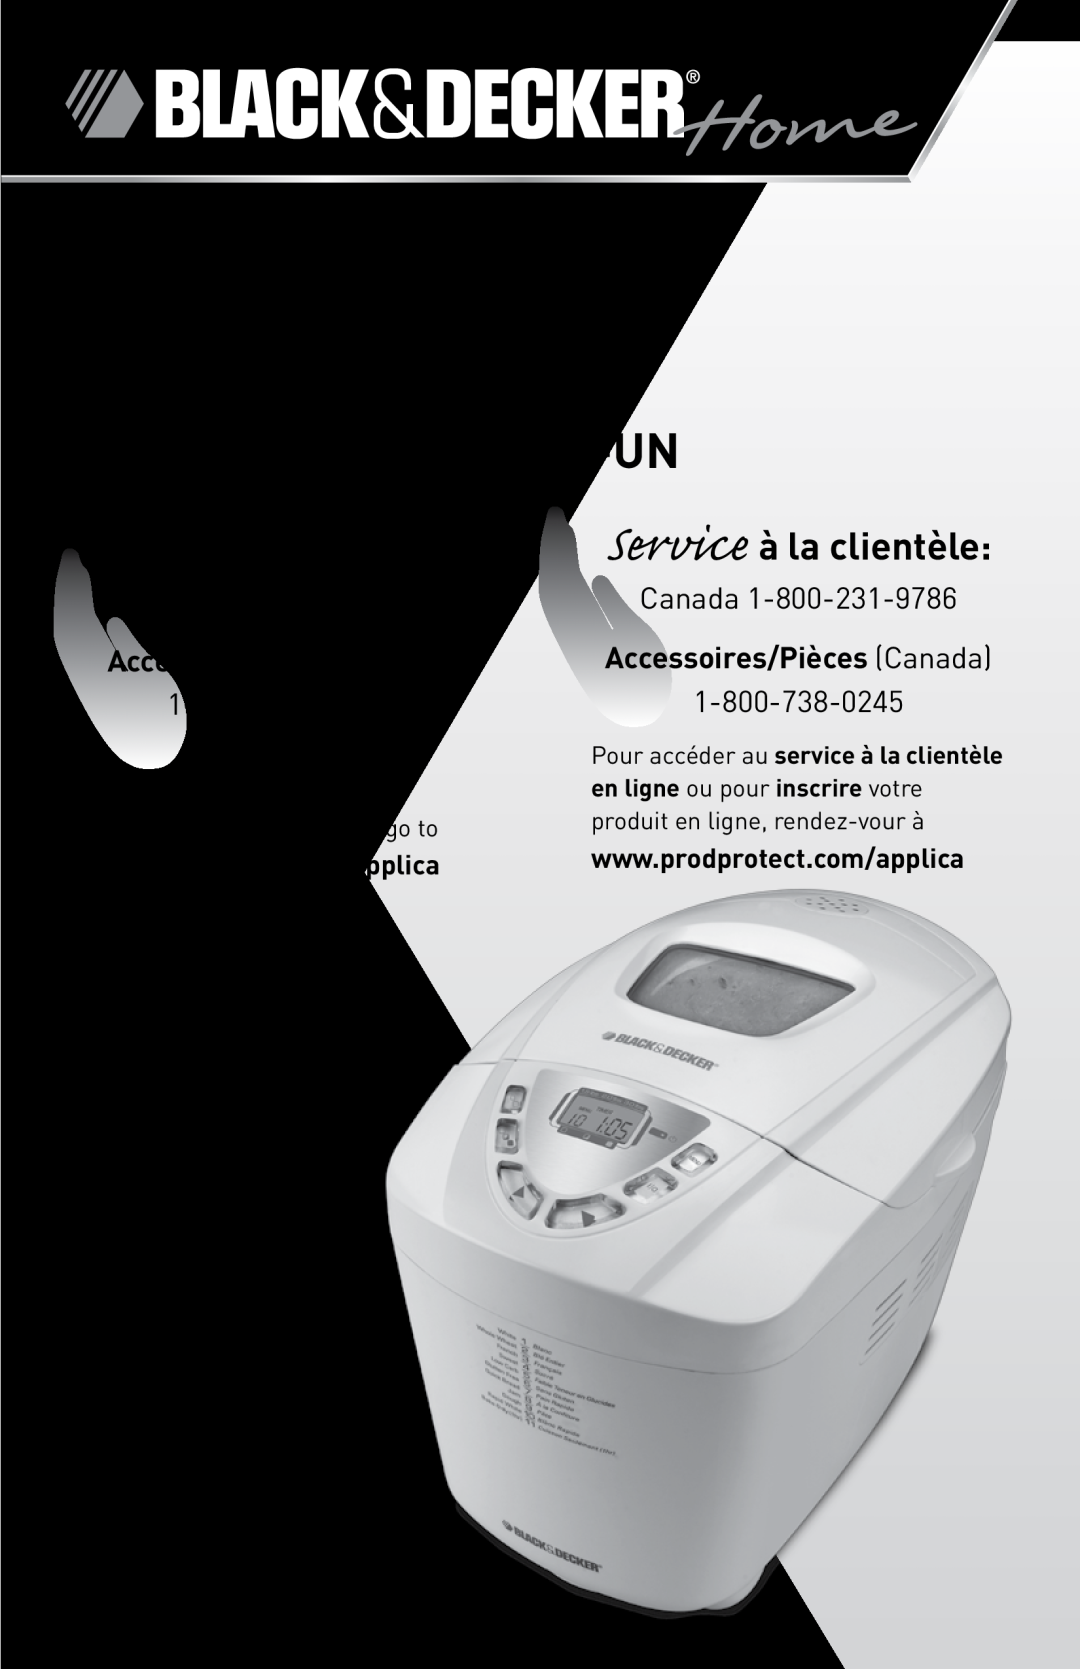 Black & Decker B000NJBYX0 manual All-in-One Automatic, automatique tout-en-un, CustomerCare Line, Service à la clientèle 